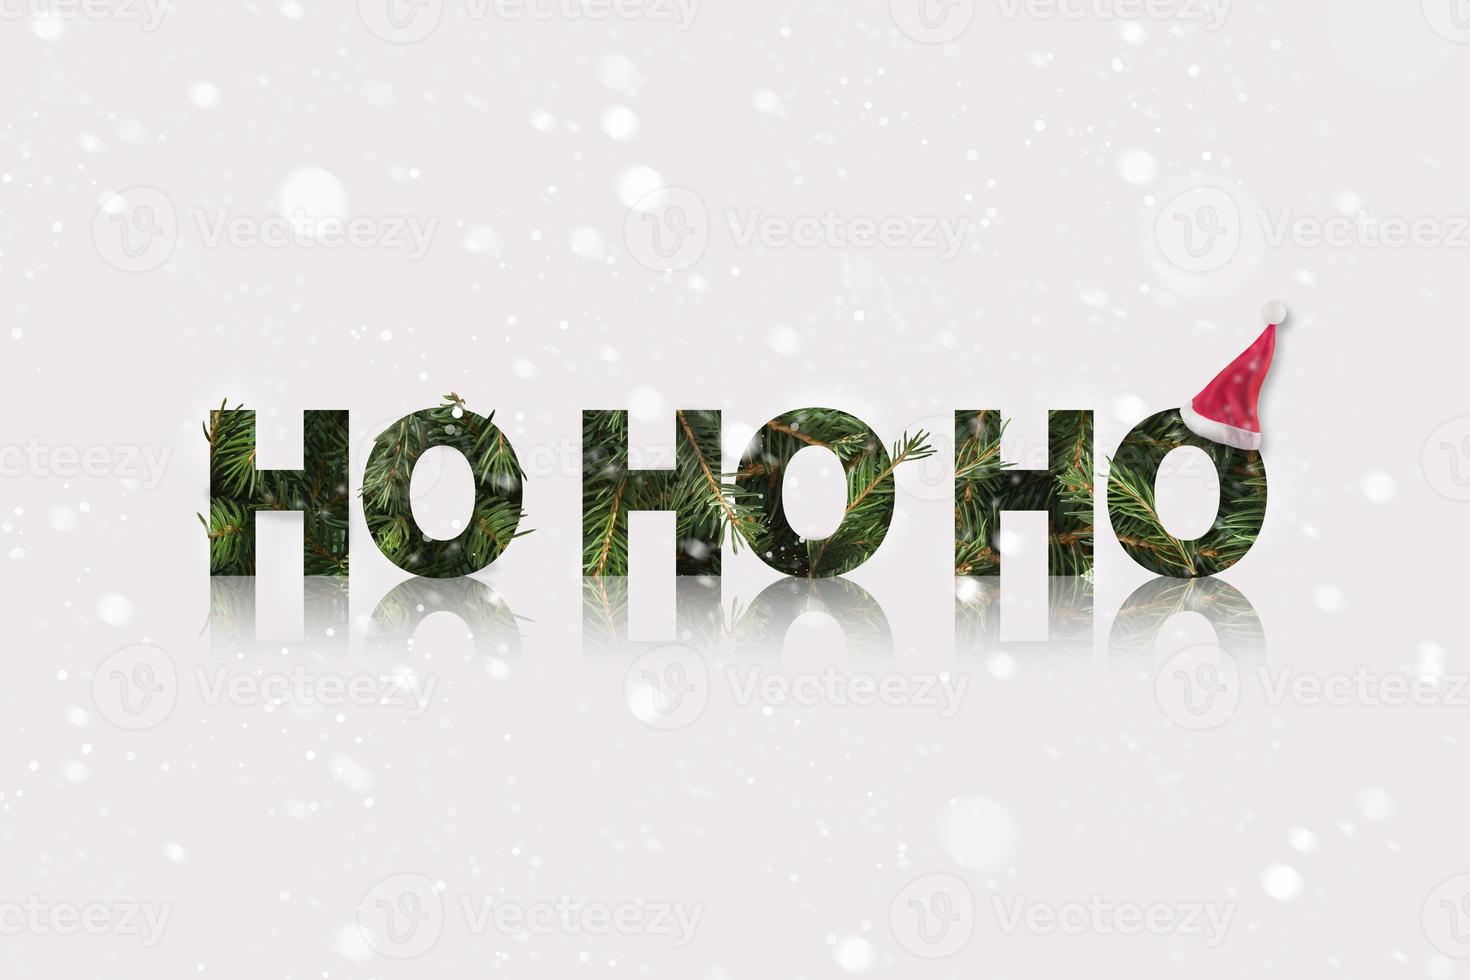 santa ho ho ho klang aus einem tannenzweig mit weihnachtsmütze am ende. Winterweihnachtsthema mit Schnee. foto